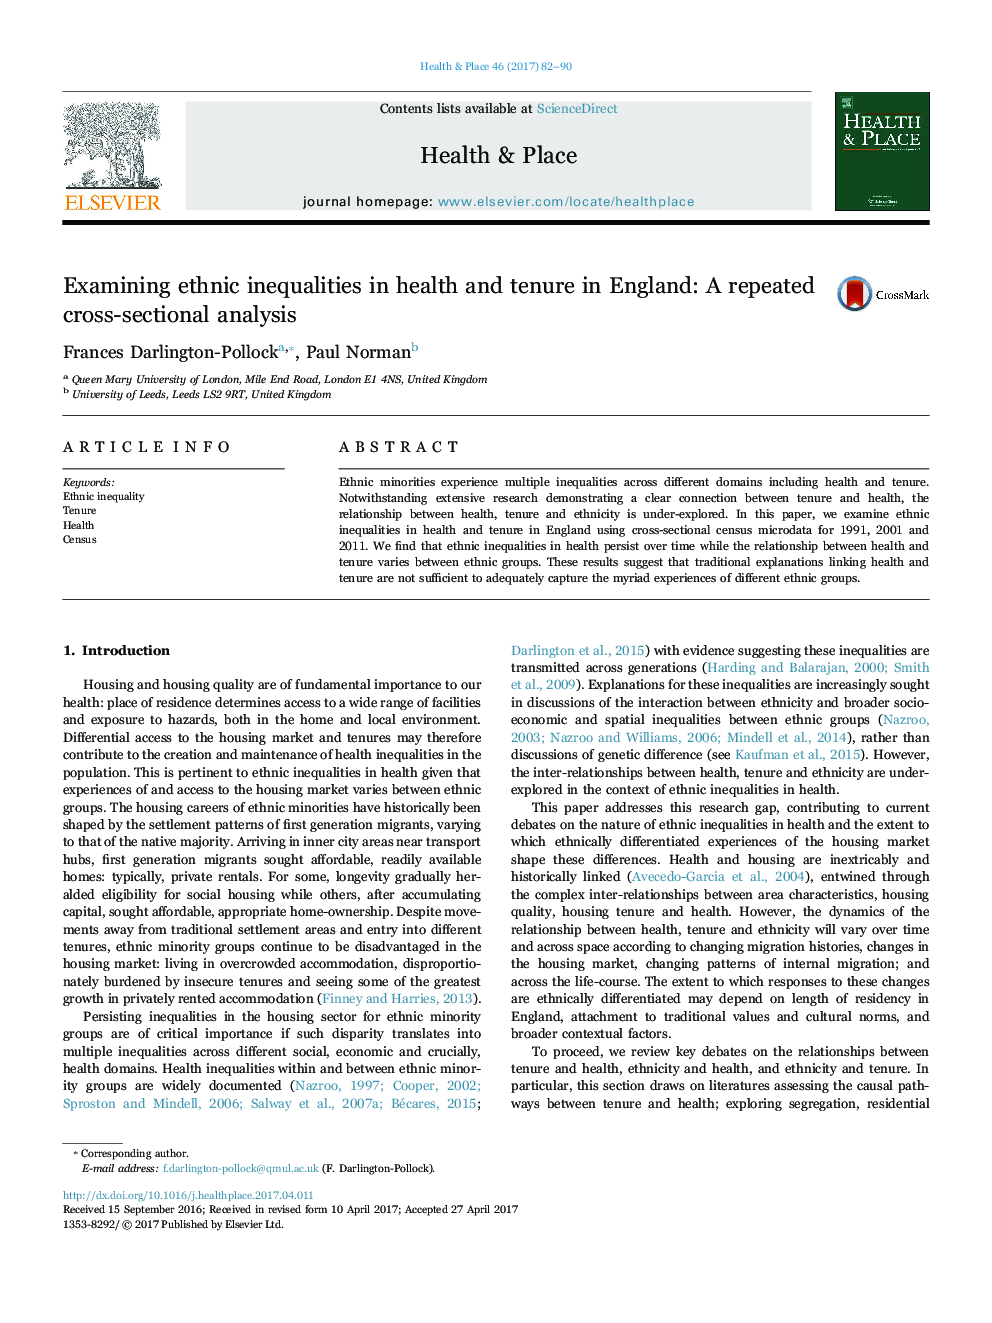 بررسی نابرابری های قومی در سلامت و تعهد در انگلستان: تجزیه و تحلیل تکراری مقطعی 